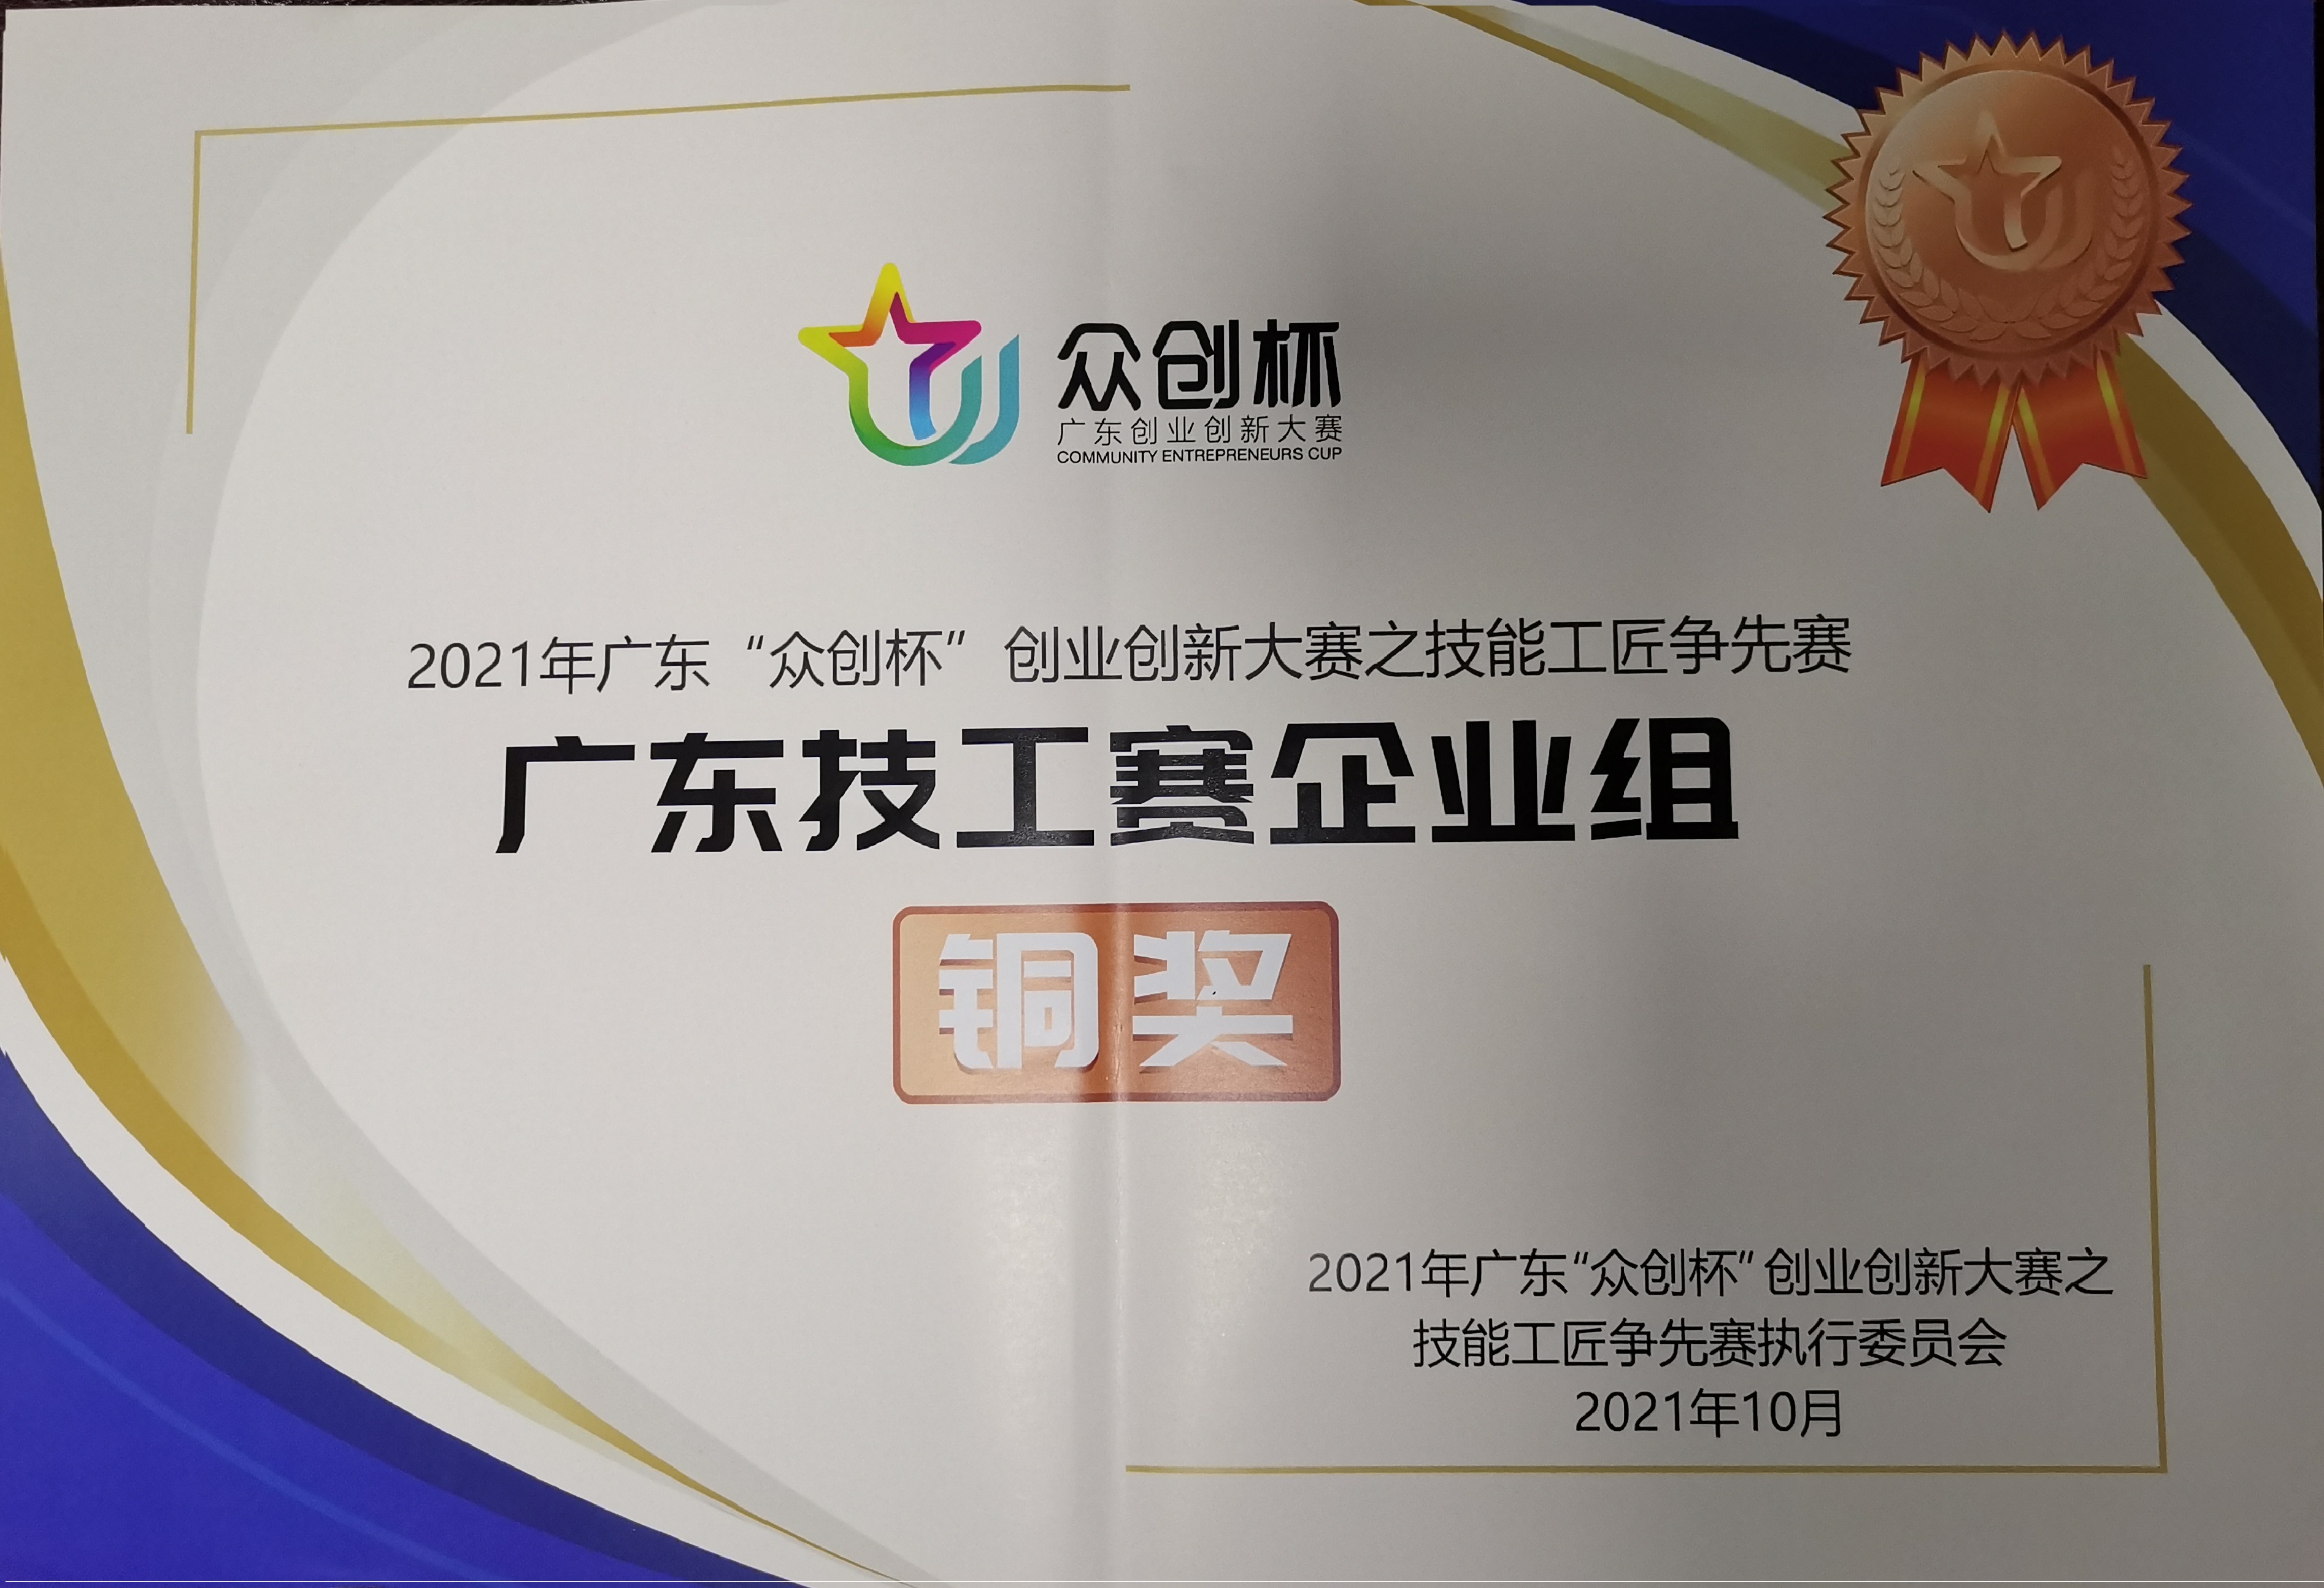 Certificate of award